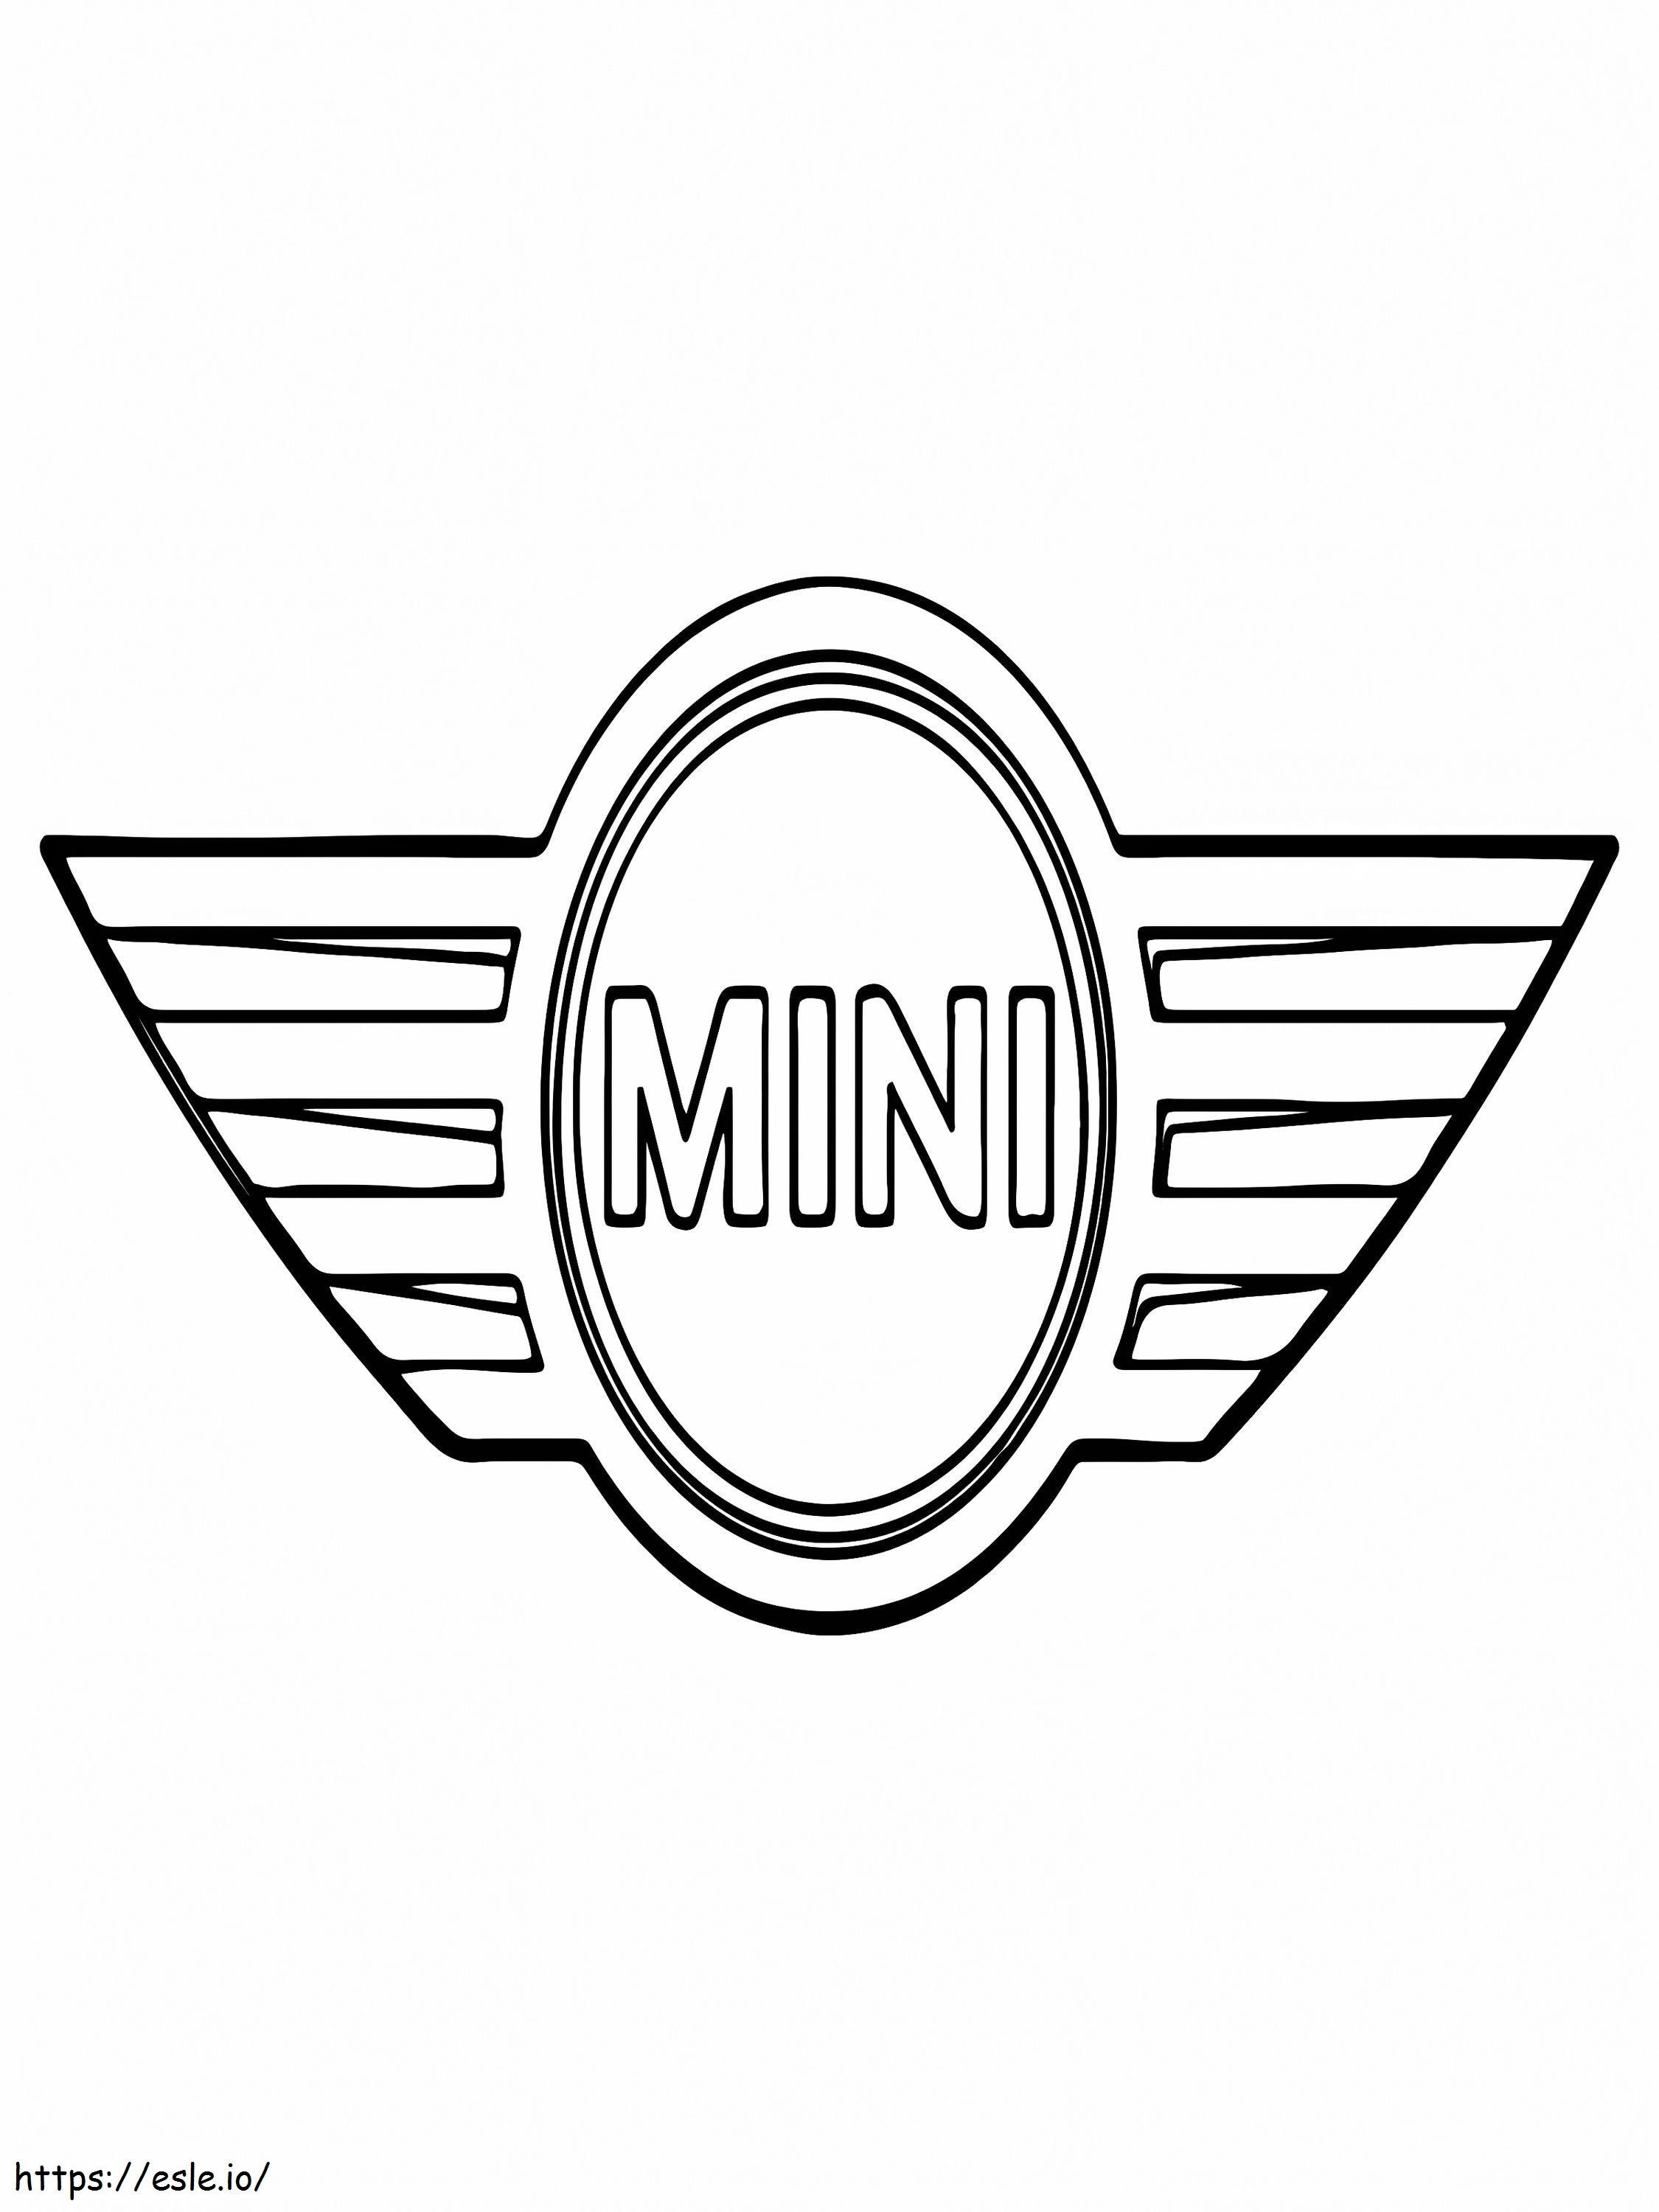 Logotipo do mini carro para colorir